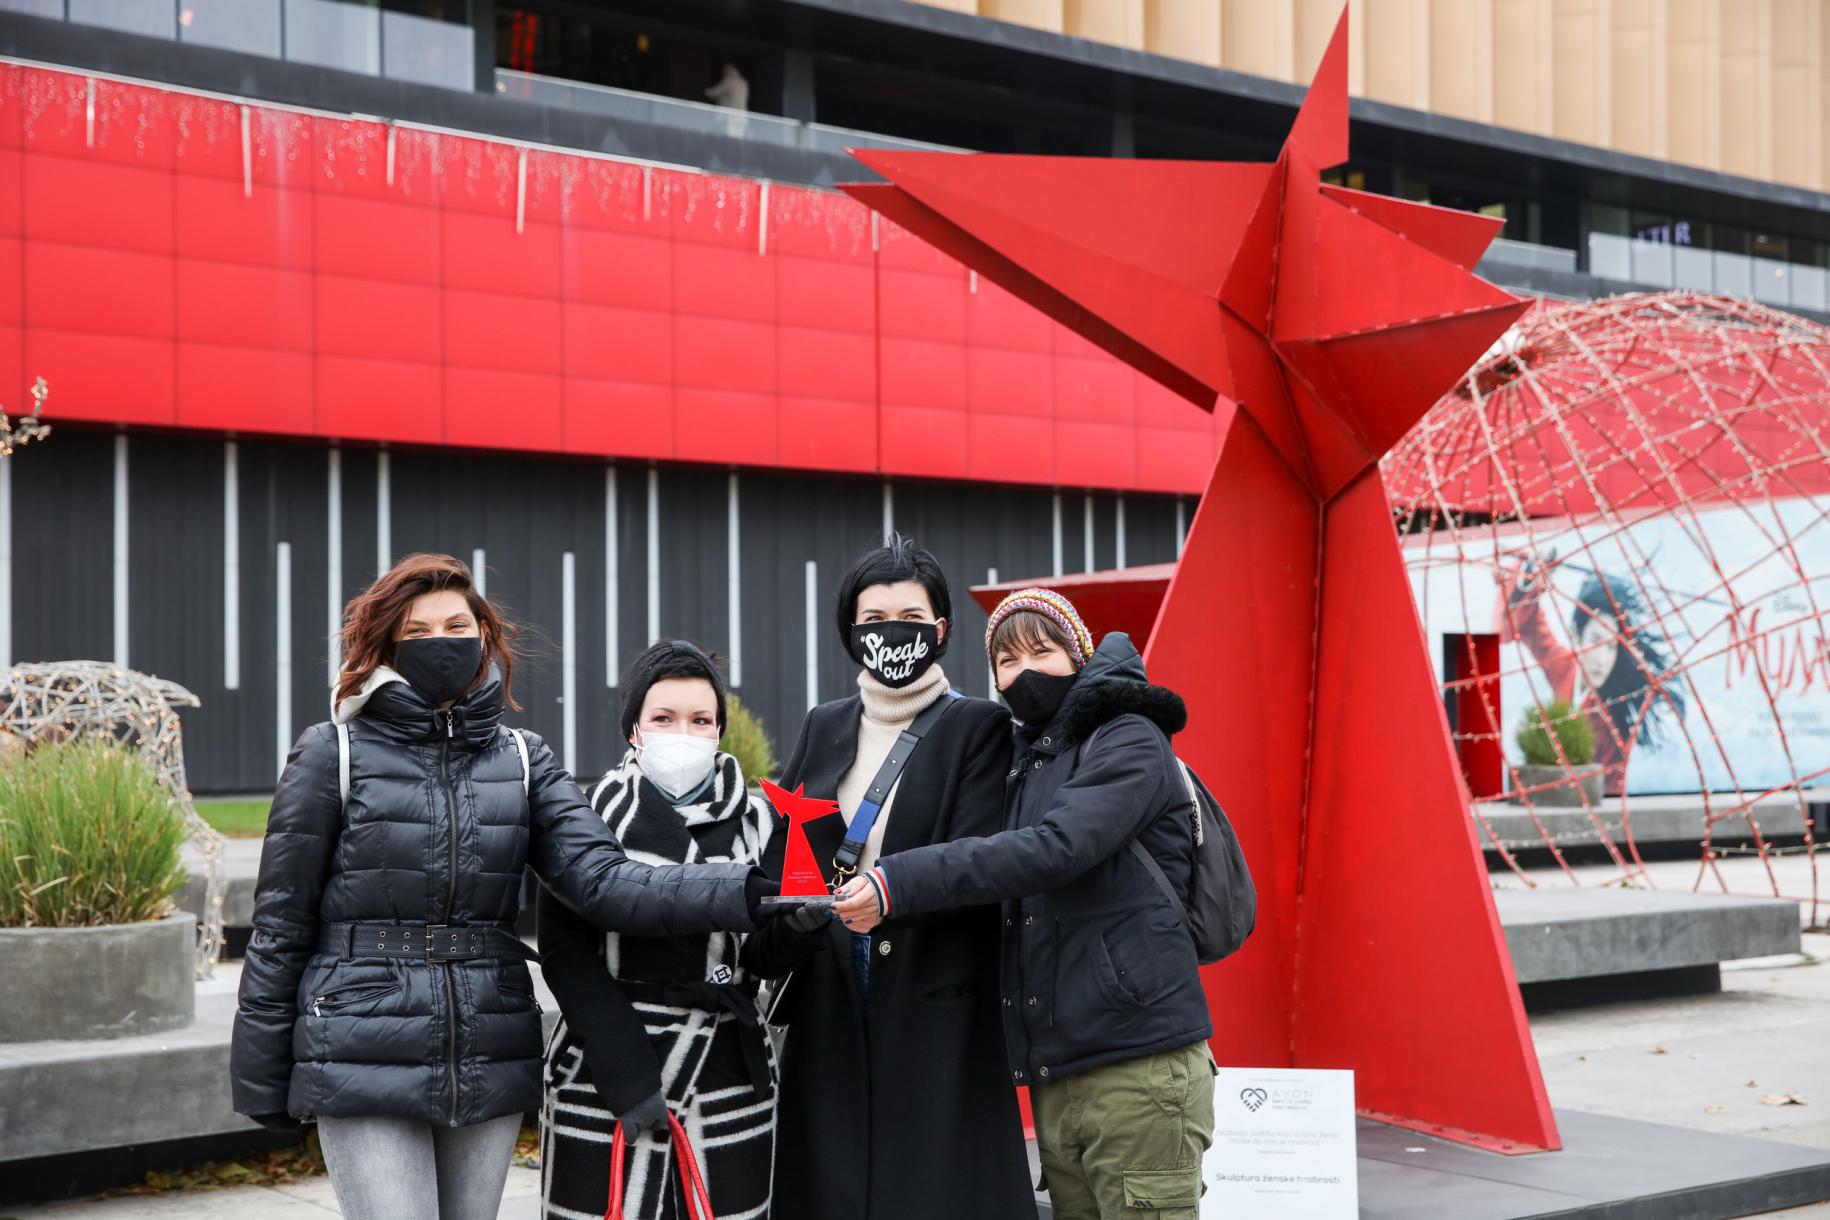 Cuatro mujeres se paran juntas con máscaras mientras reciben el premio que tiene la misma forma que la estatua roja que hay en el fondo.